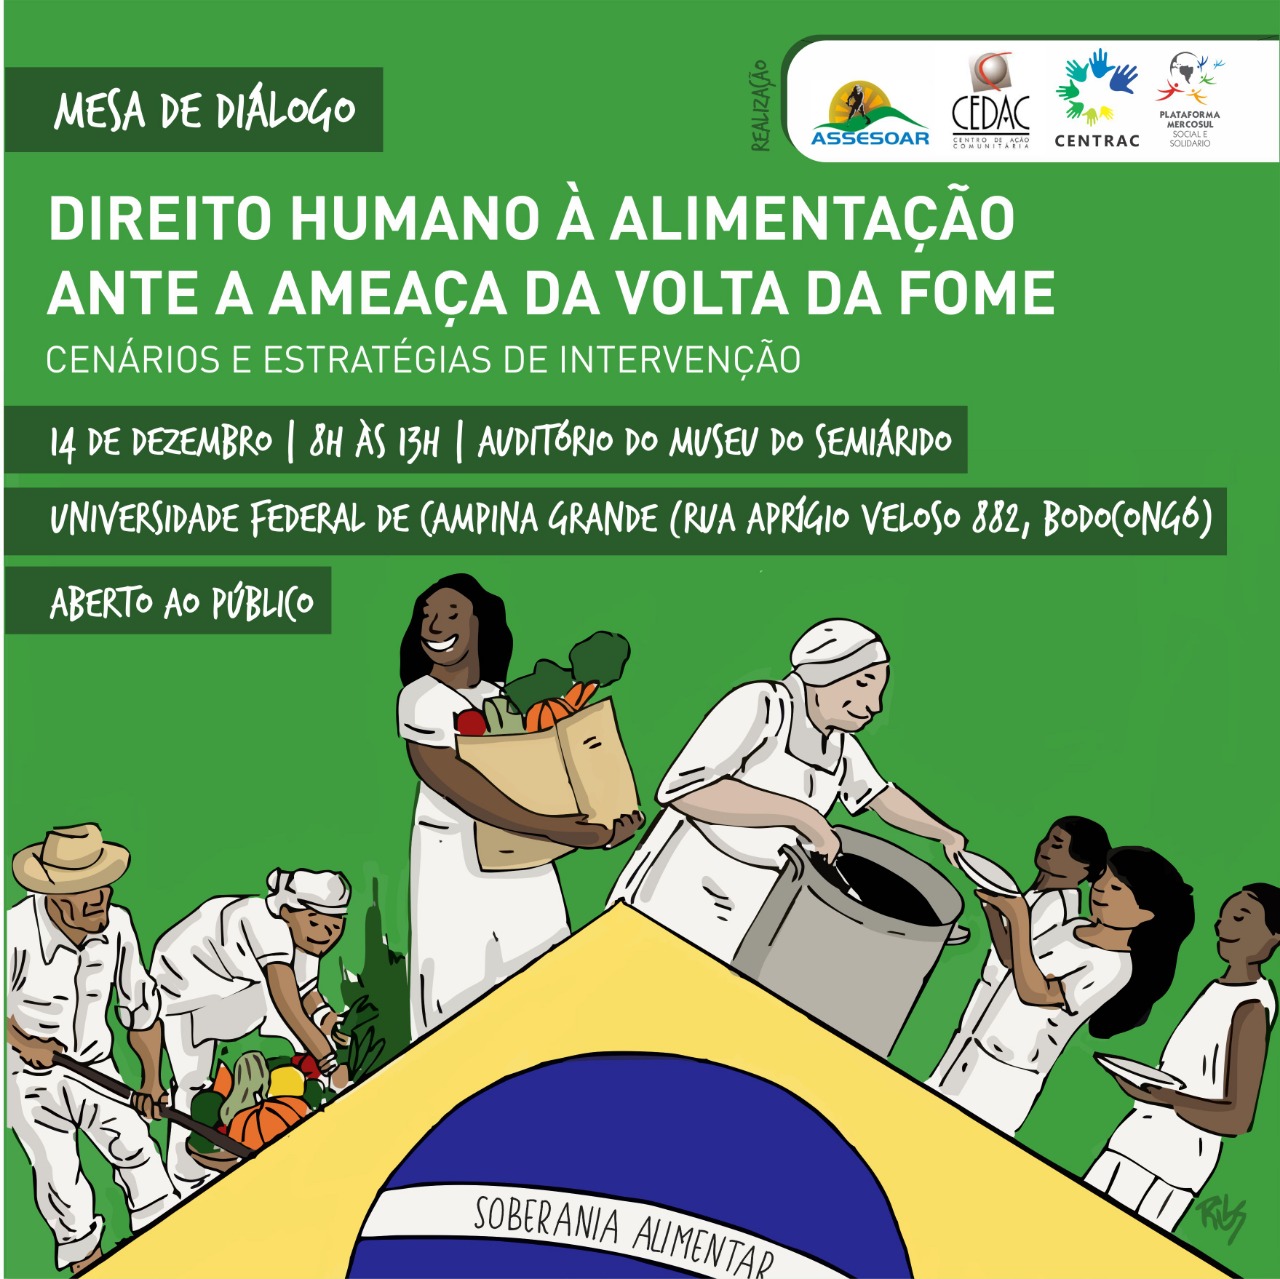 Mesa de diálogo em Campina Grande debaterá o direito humano à alimentação e a volta da fome no Brasil